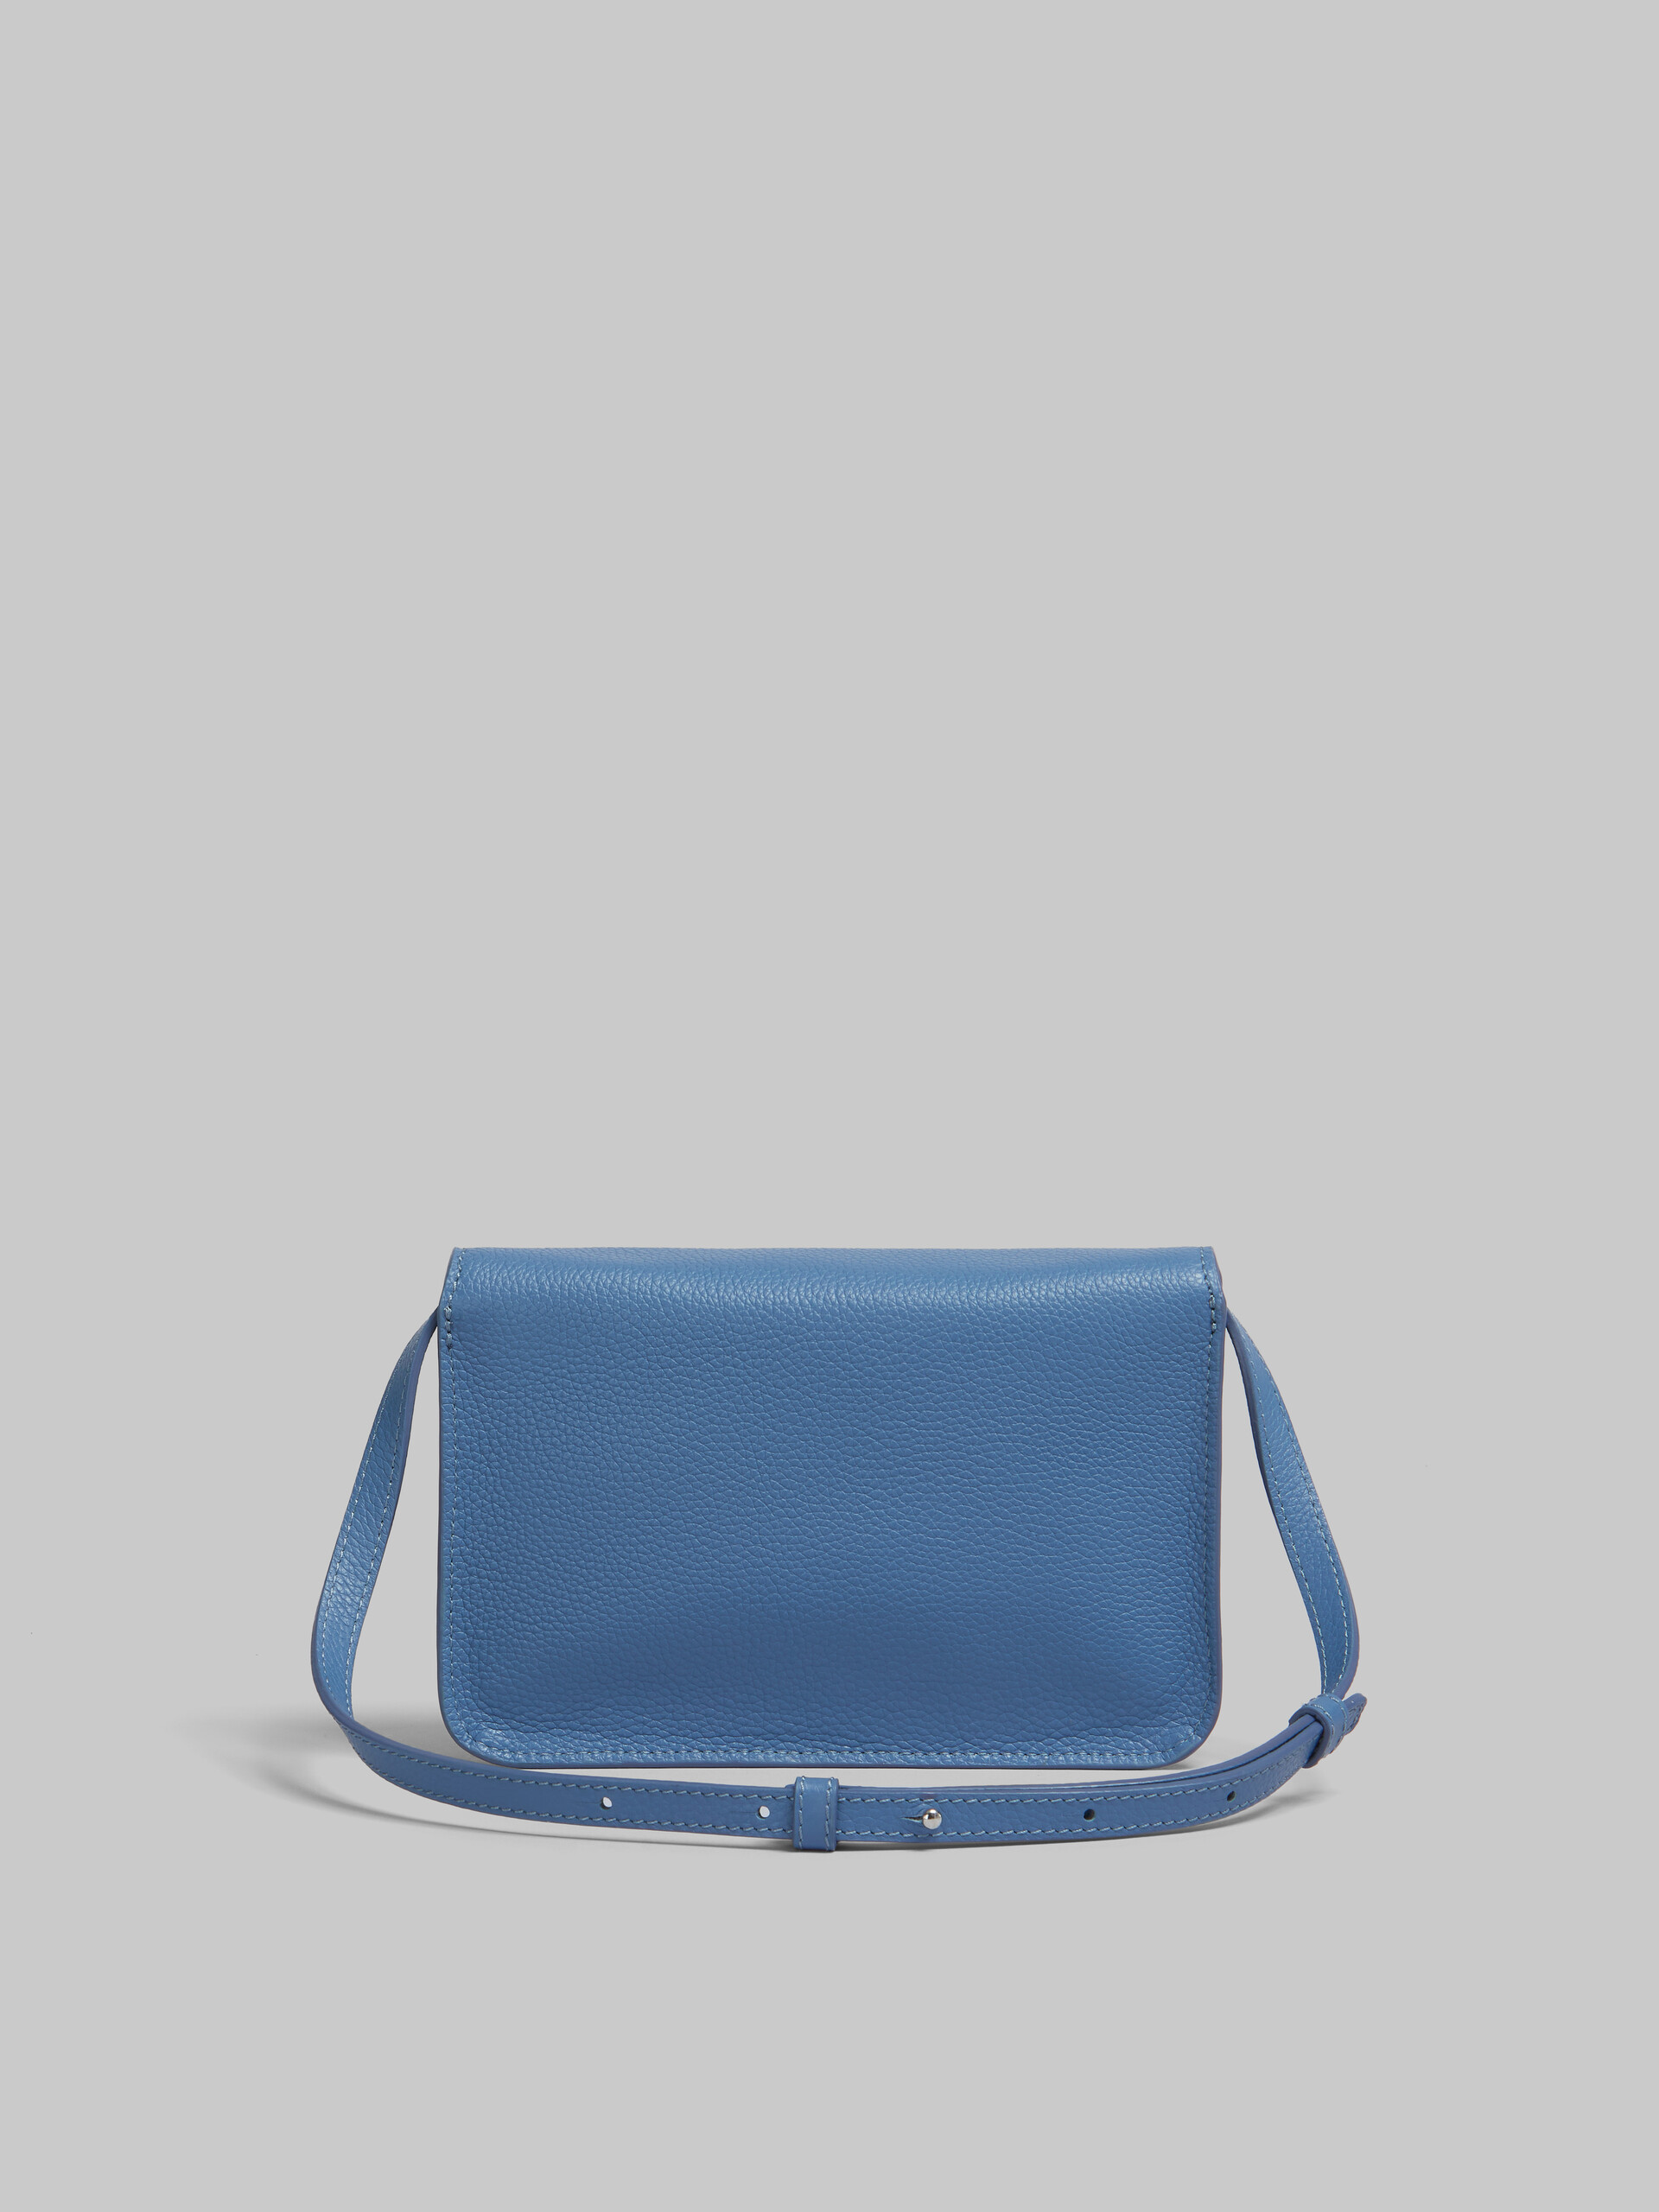 Sac porté épaule en cuir bleu avec effet raccommodé Marni - Pochettes - Image 3